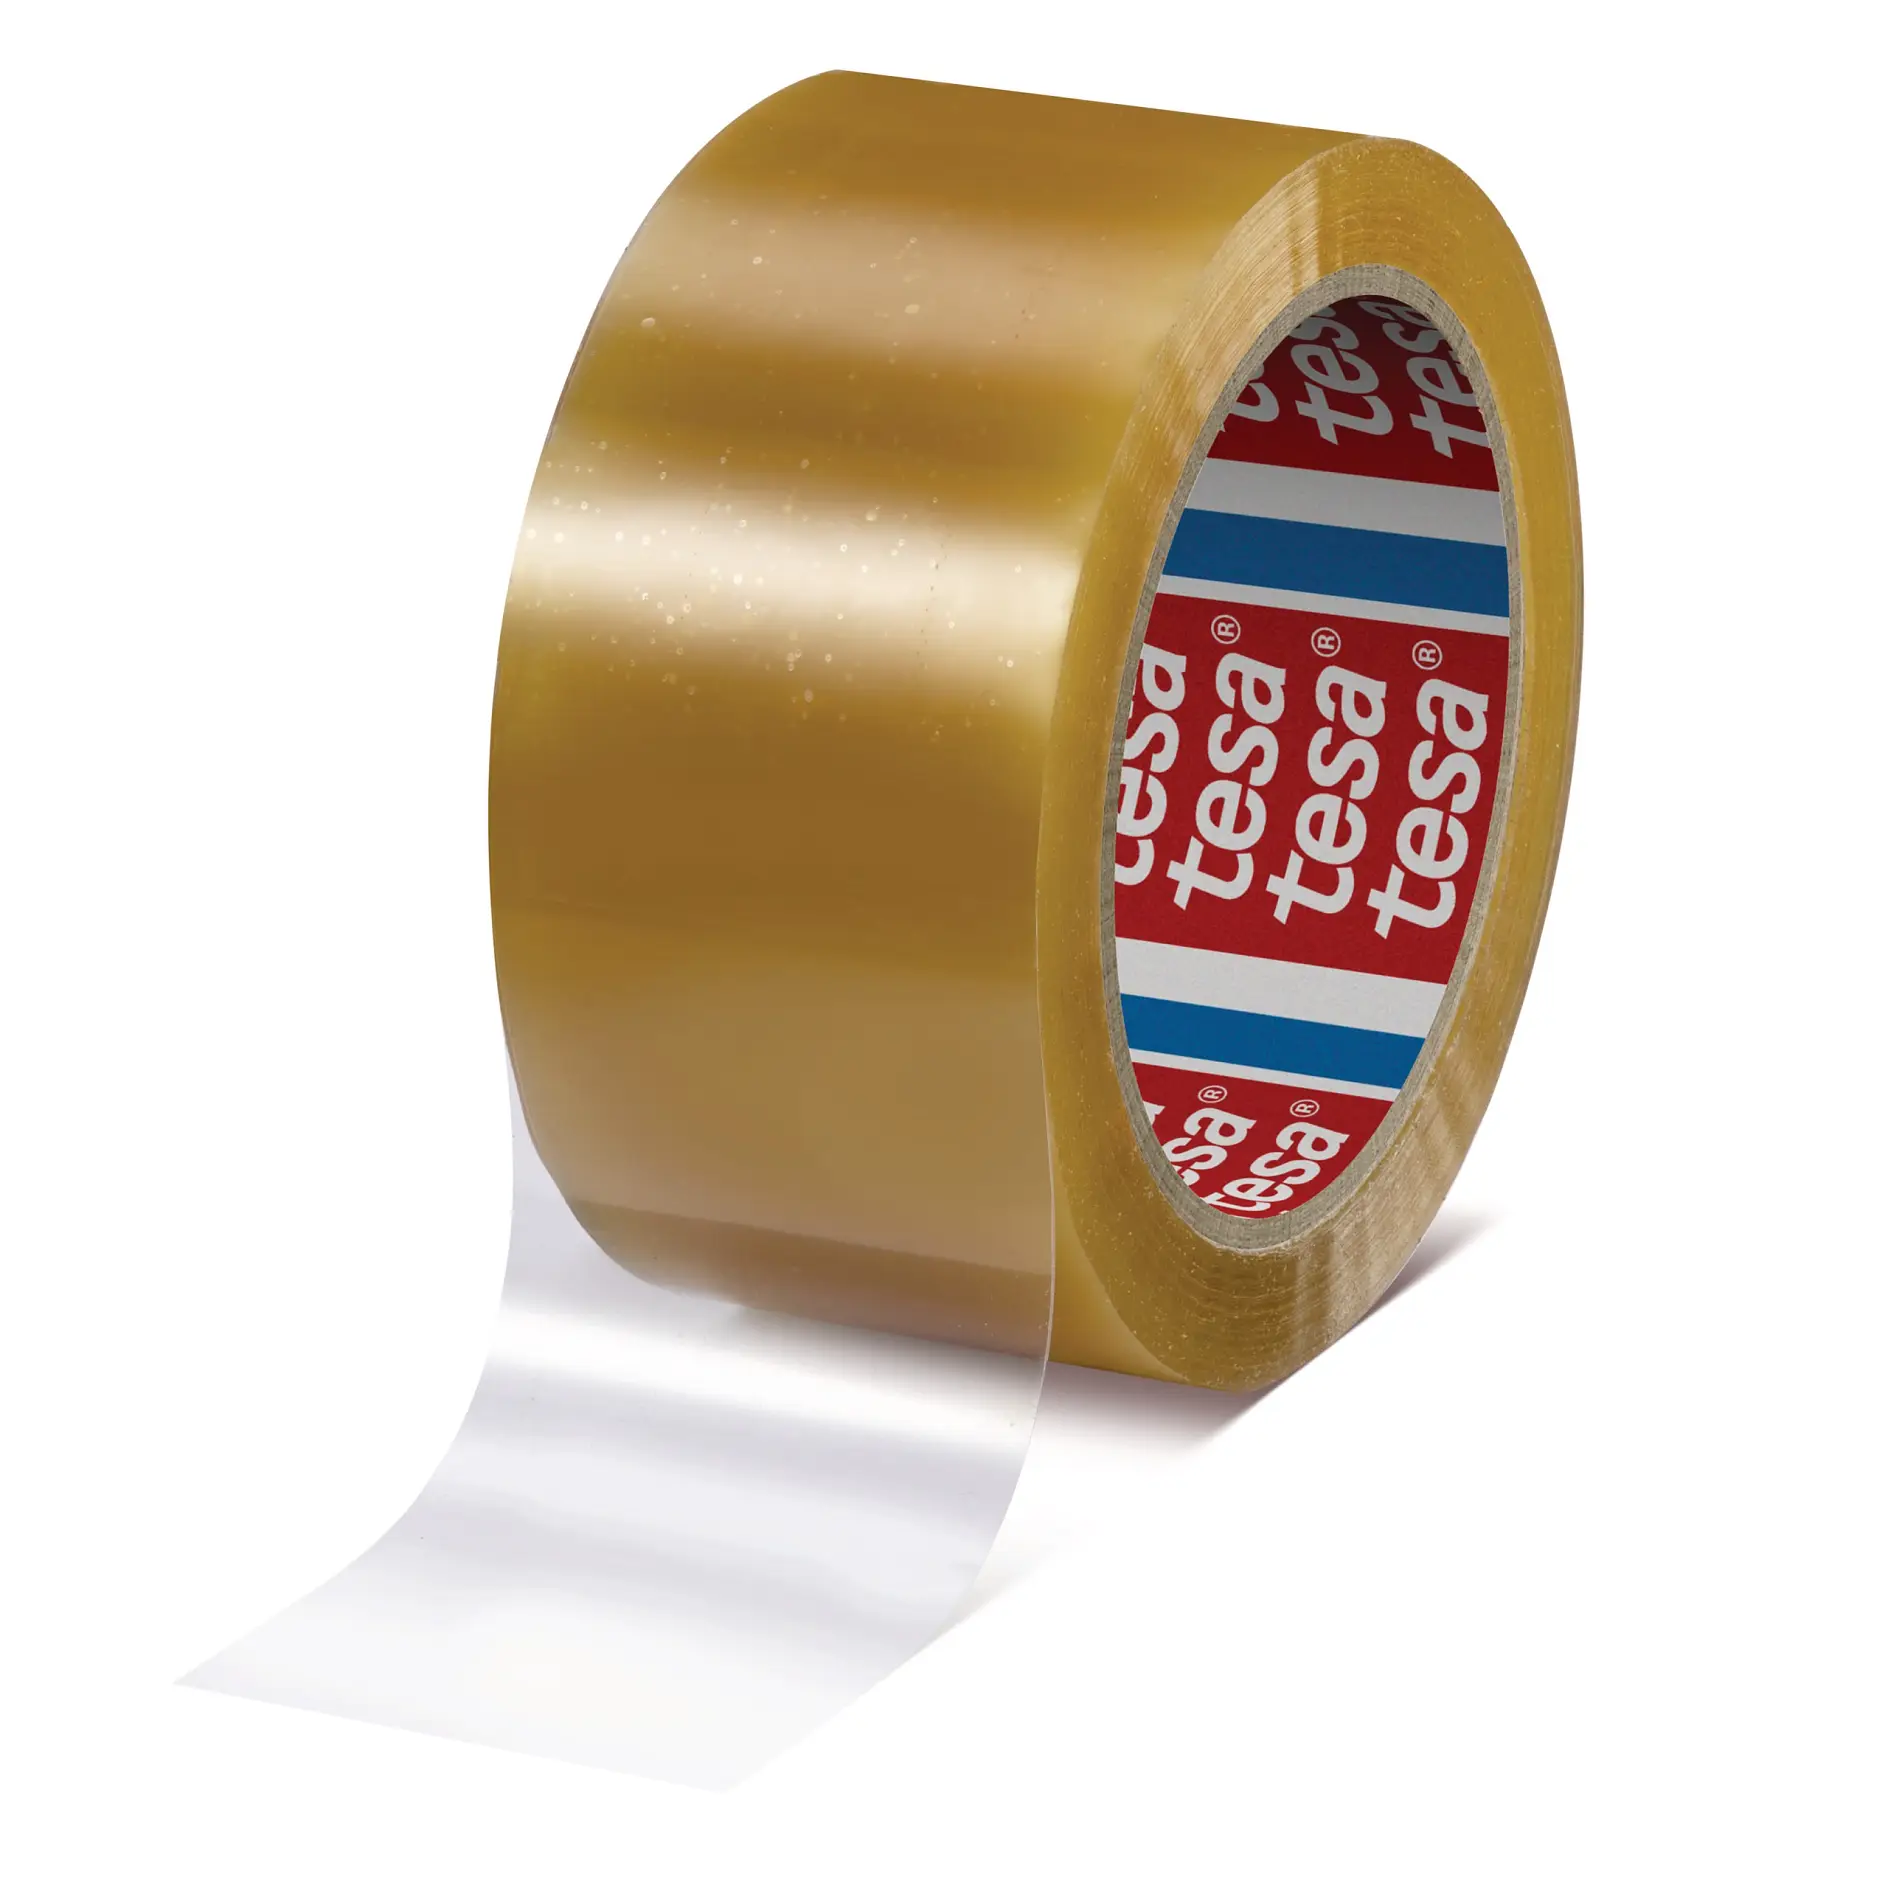 tesa-60400-bio-based-packaging-tape-604000000000-pr